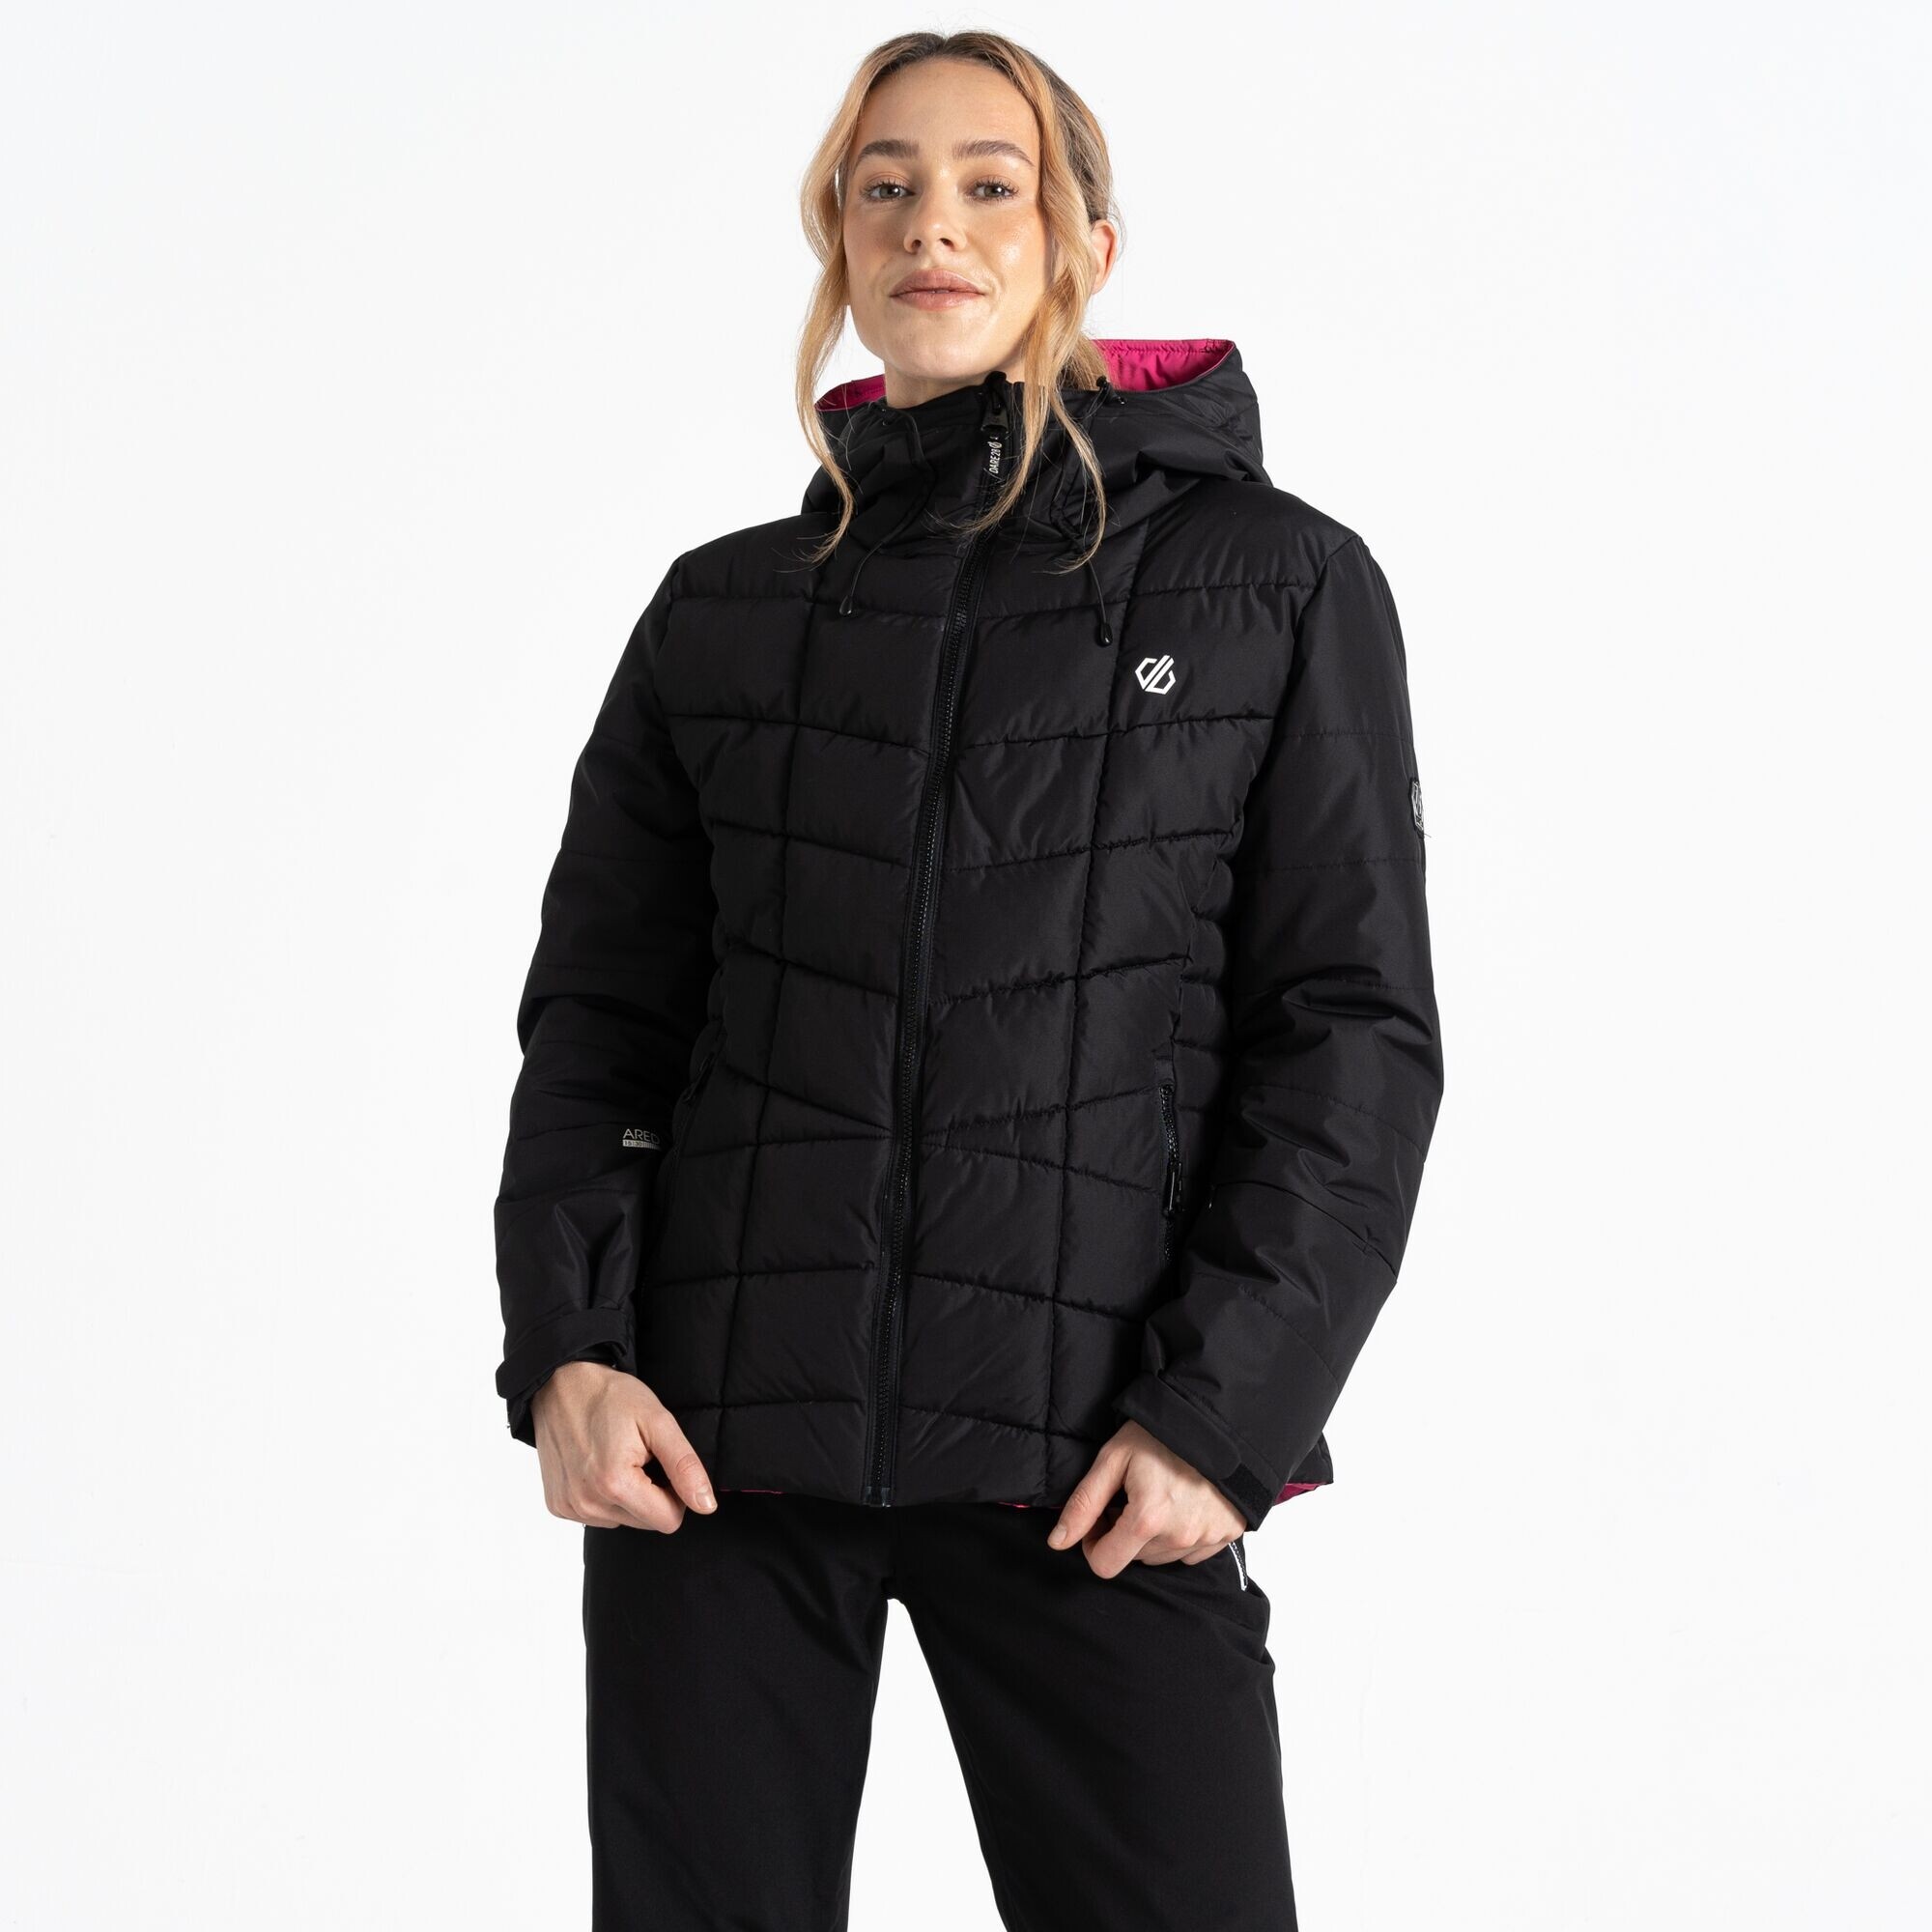 Dámská lyžařská bunda Blindside Jacket DWP569-800 černá - Dare2B 34